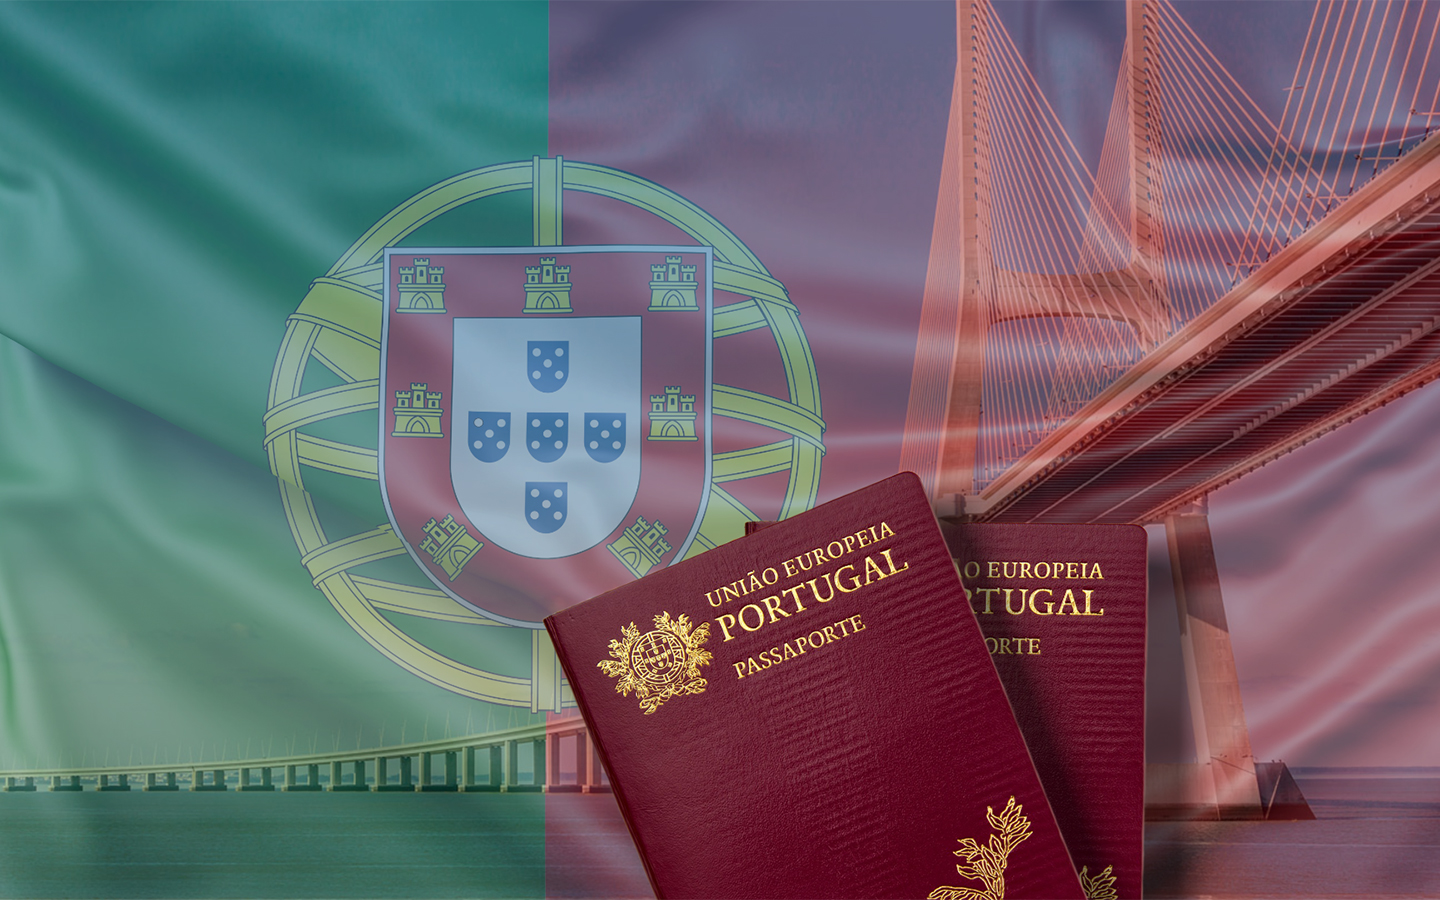 Portugal’s Golden Visa scheme nets 65.6 million euros in November